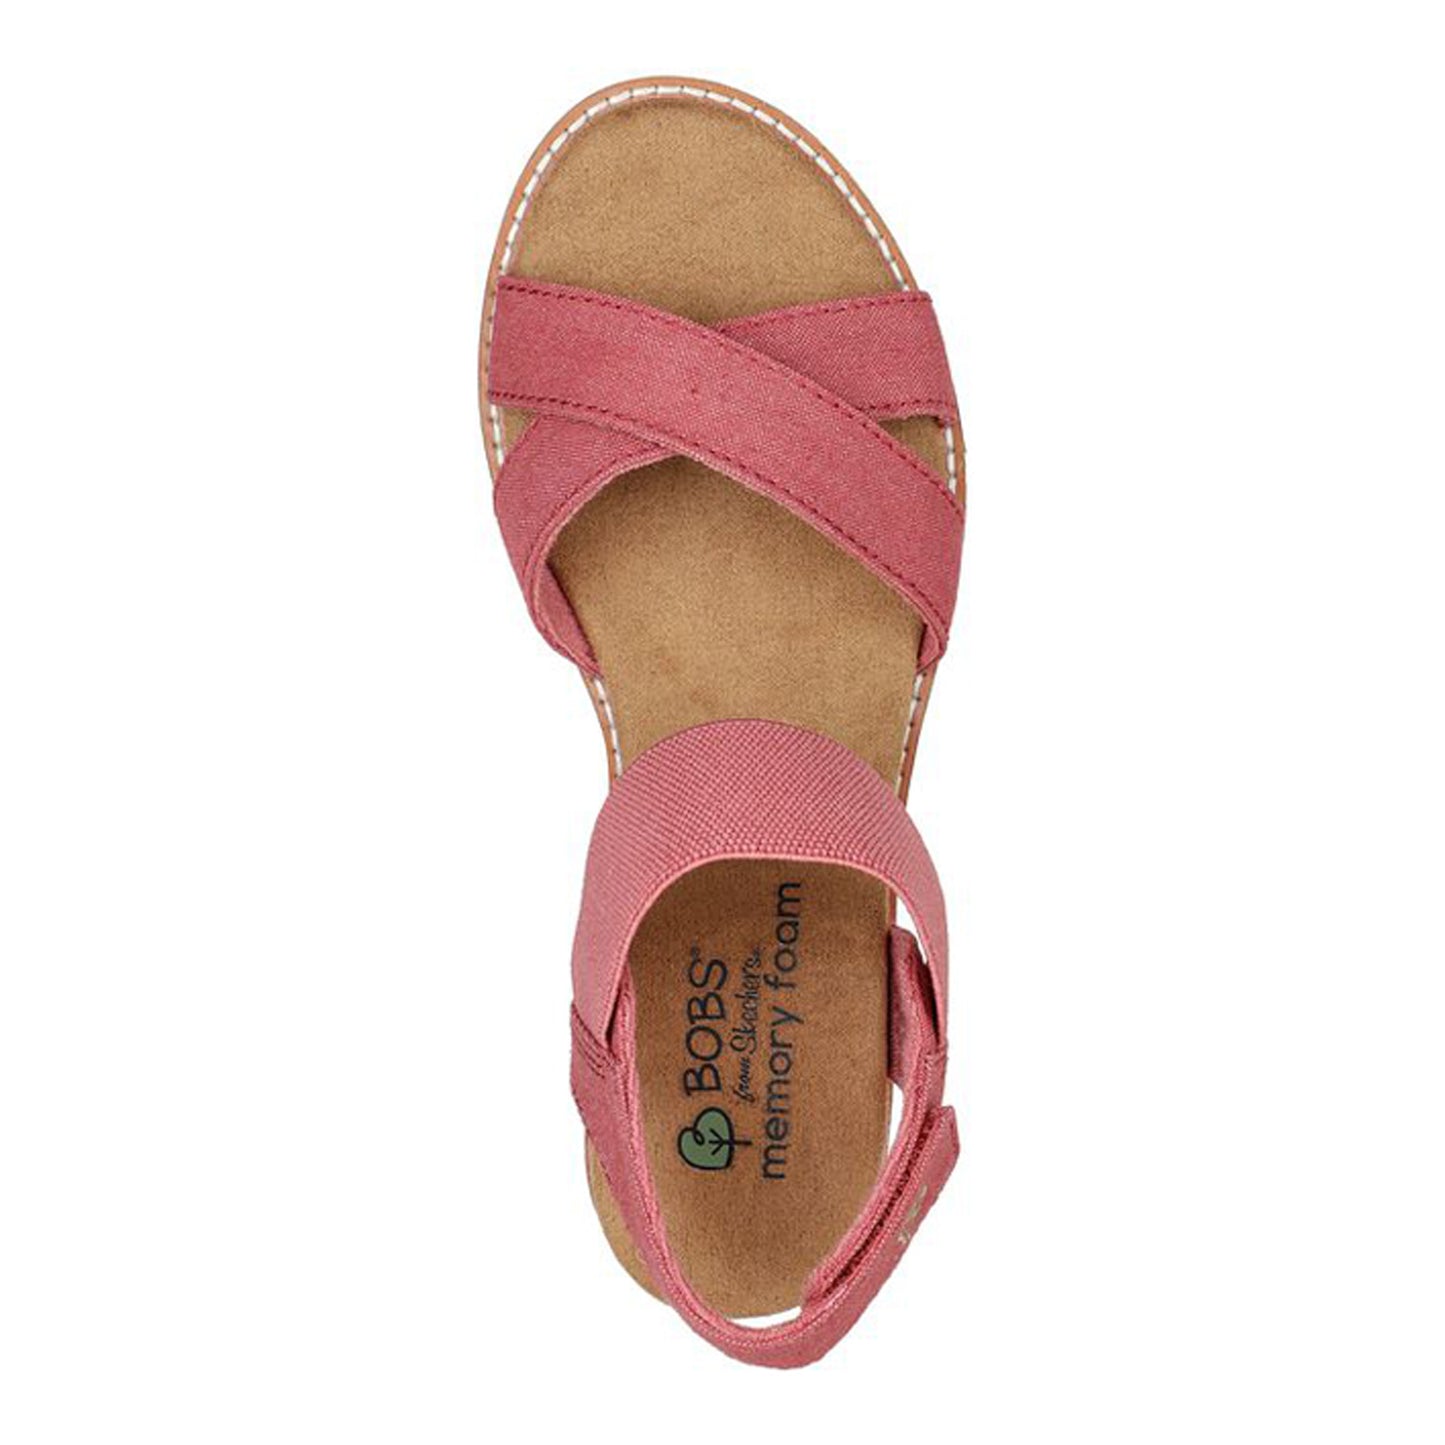 Peltz Shoes  Women's Skechers BOBS Desert Kiss - Peaks & Valleys Sandal RED 113550-RED